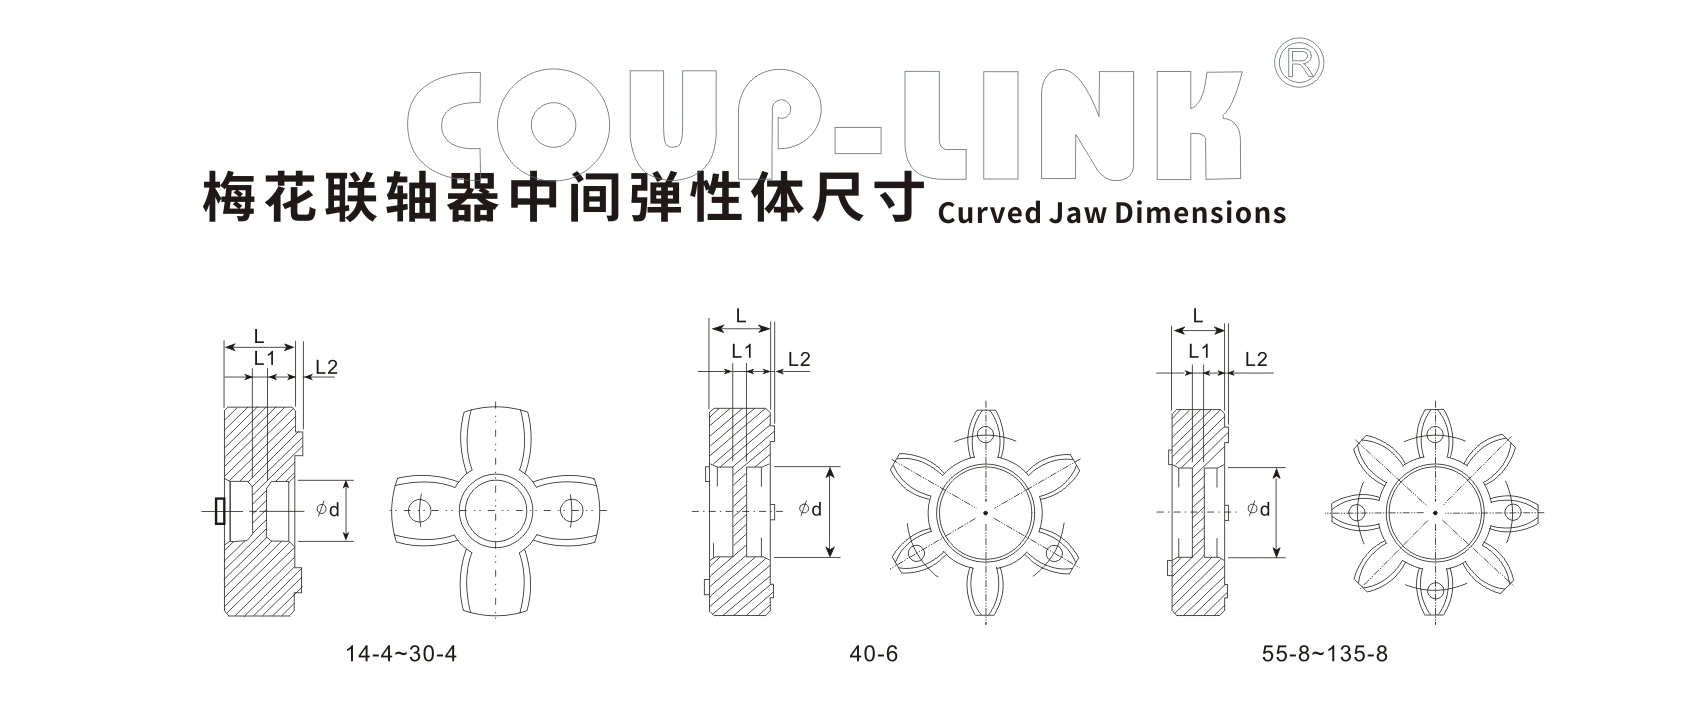 LK20系列（经济型） 定位螺丝固定型梅花联轴器_联轴器种类-广州菱科自动化设备有限公司